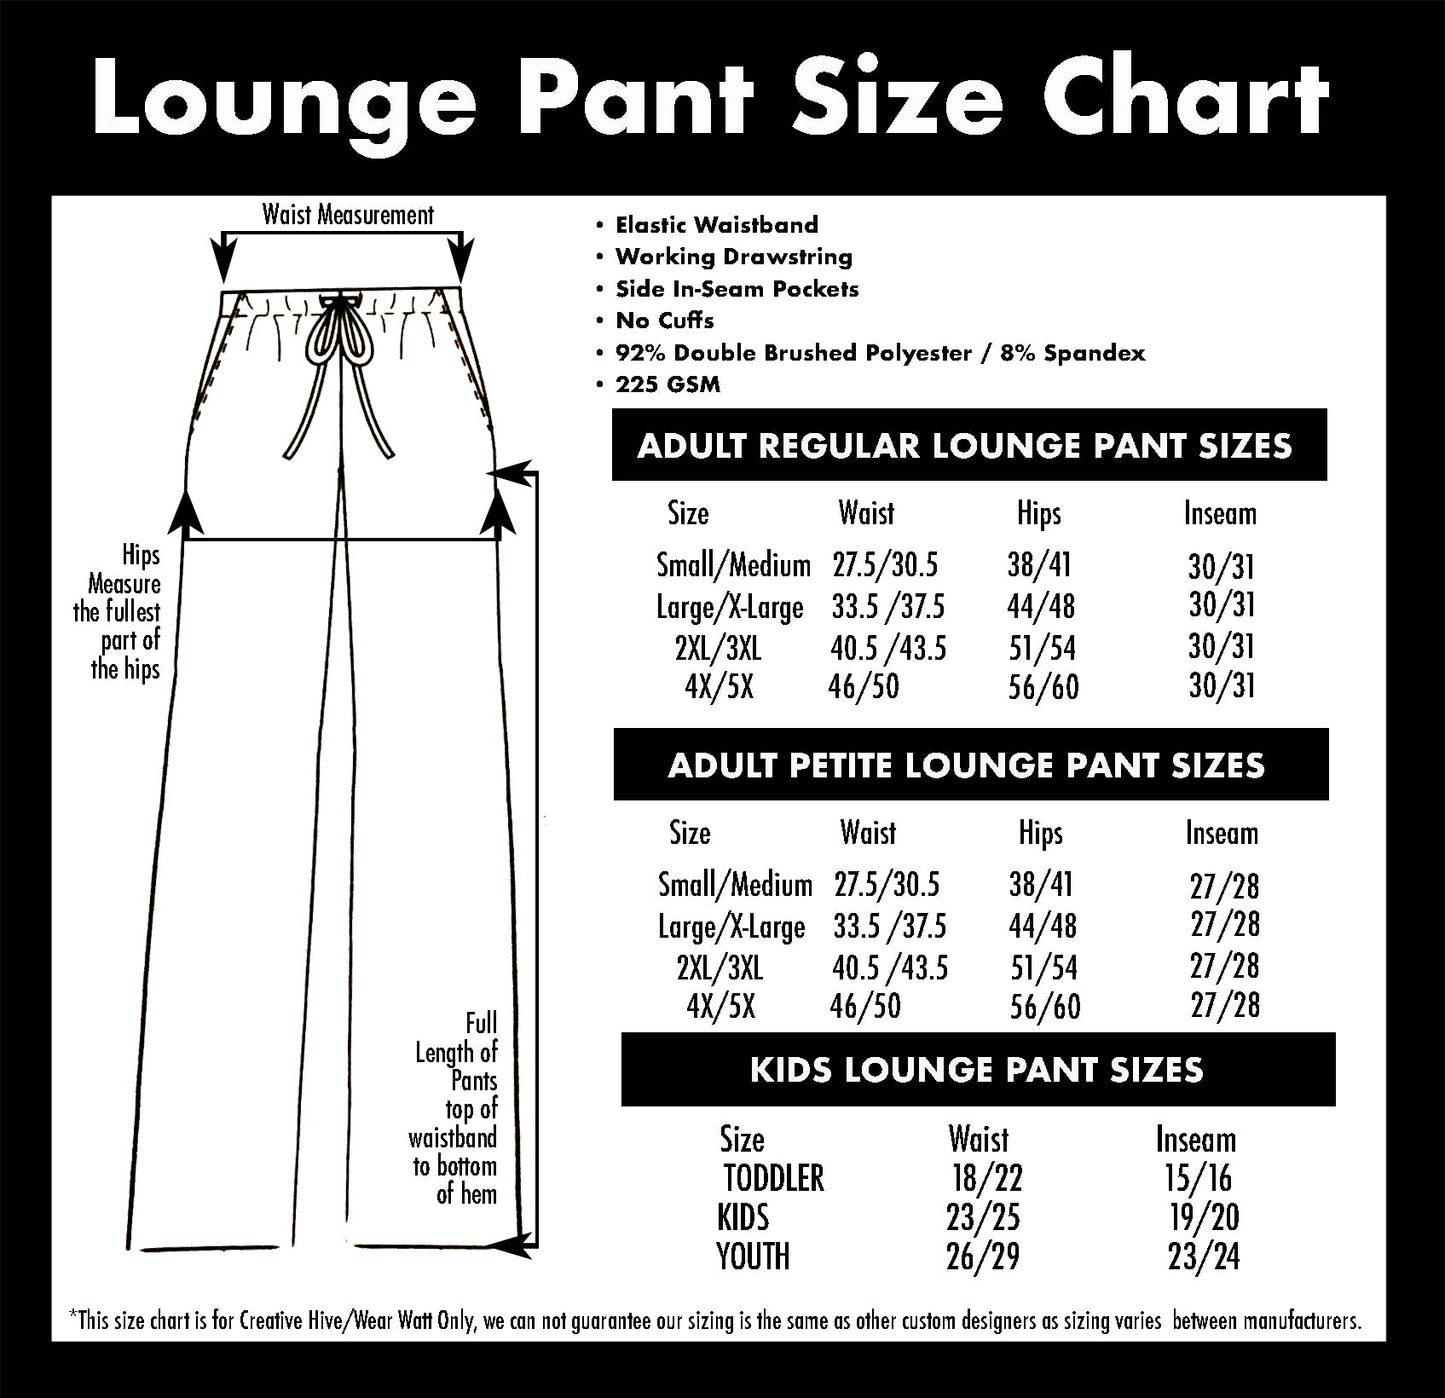 Social Distancing Queen - Lounge Pants